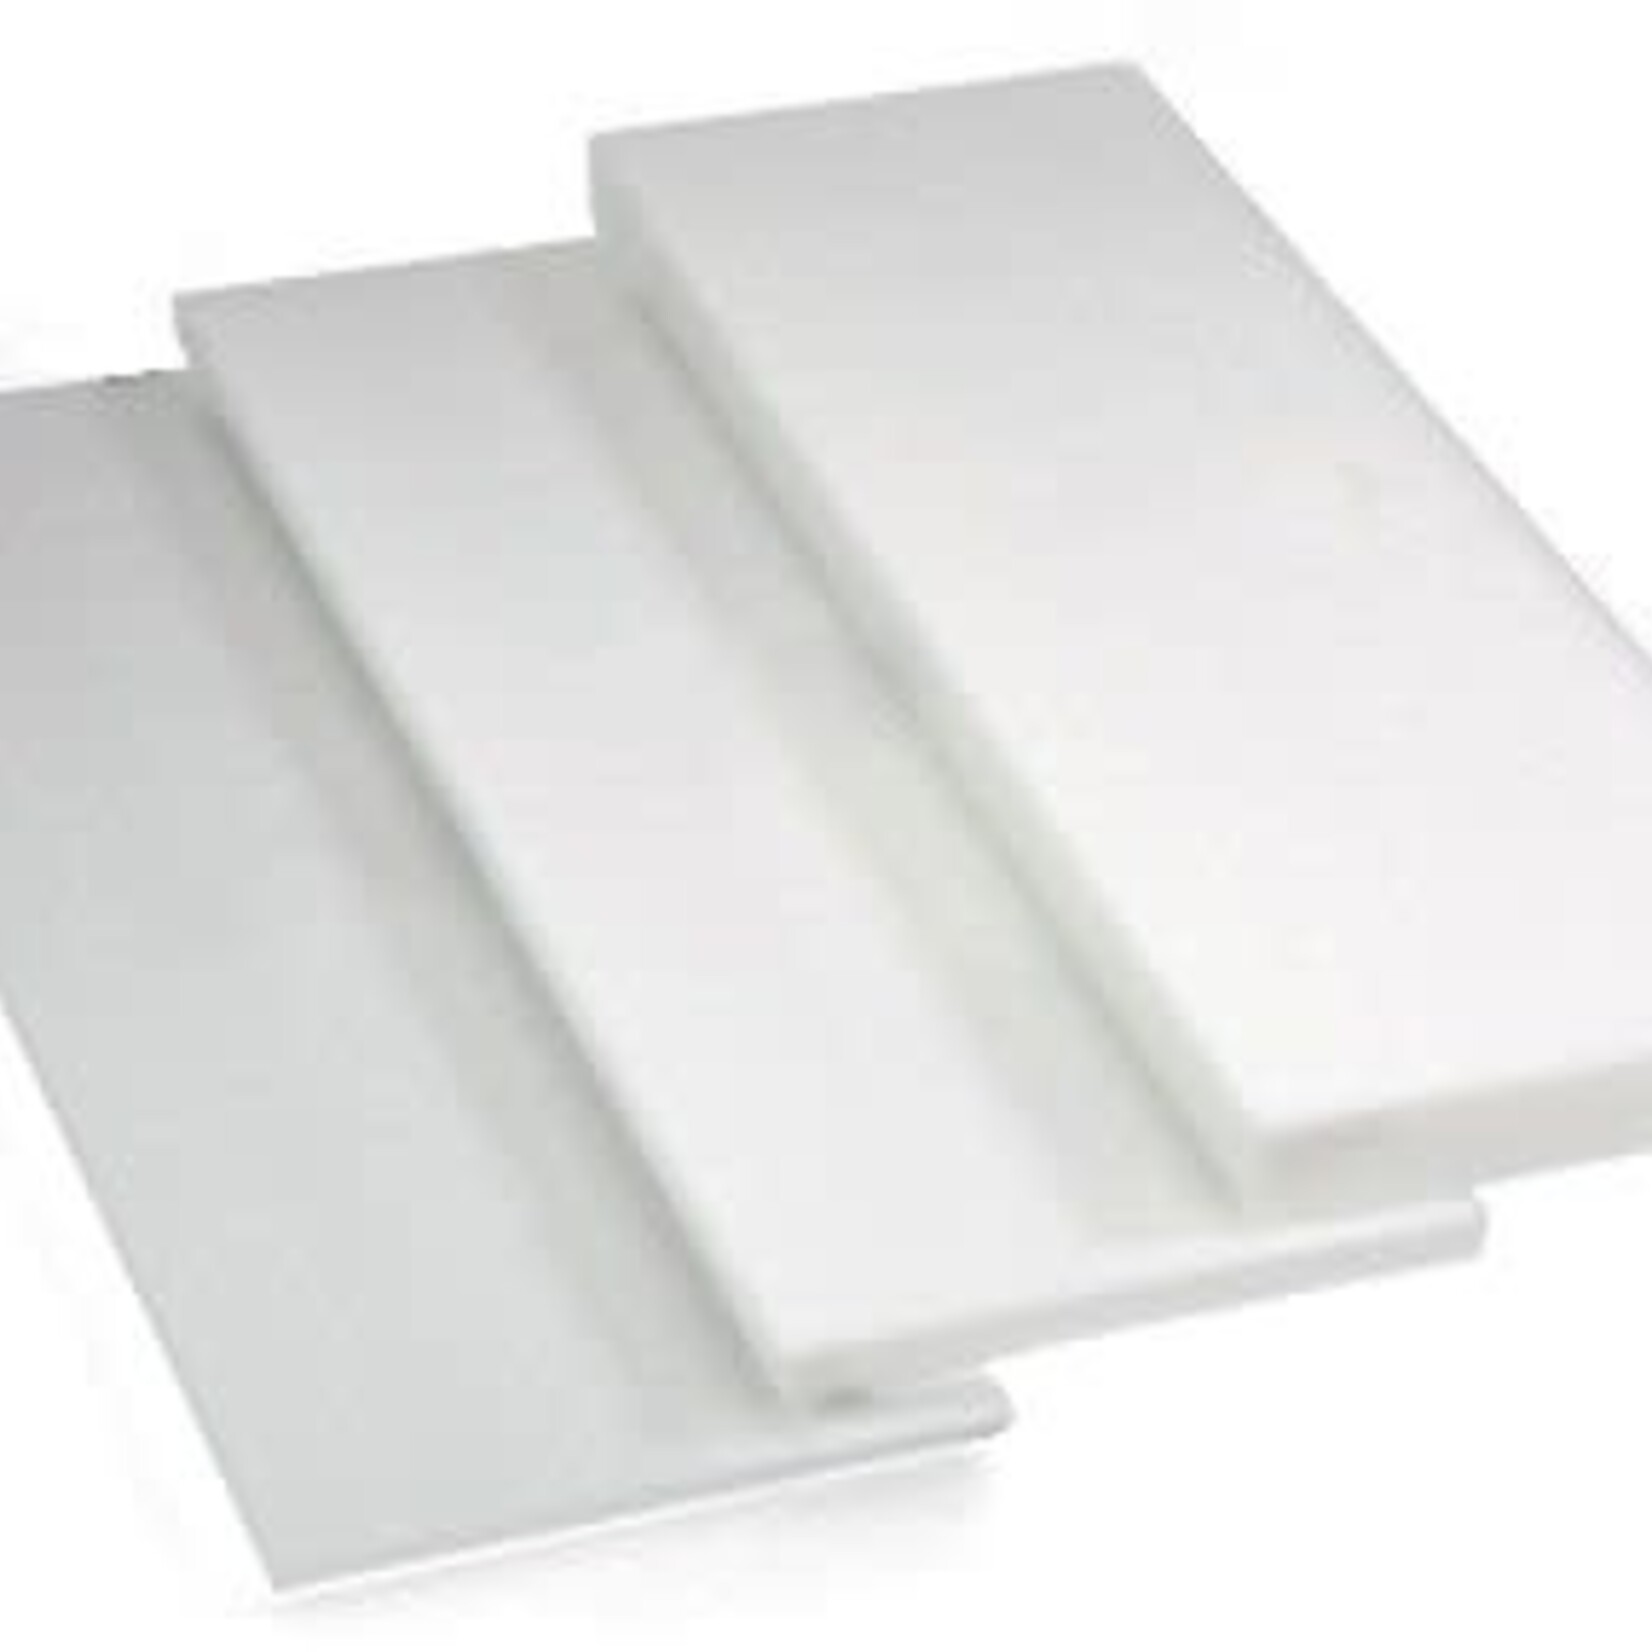 Styrofoam Sheet White 2 x 4feet x 1 Inch